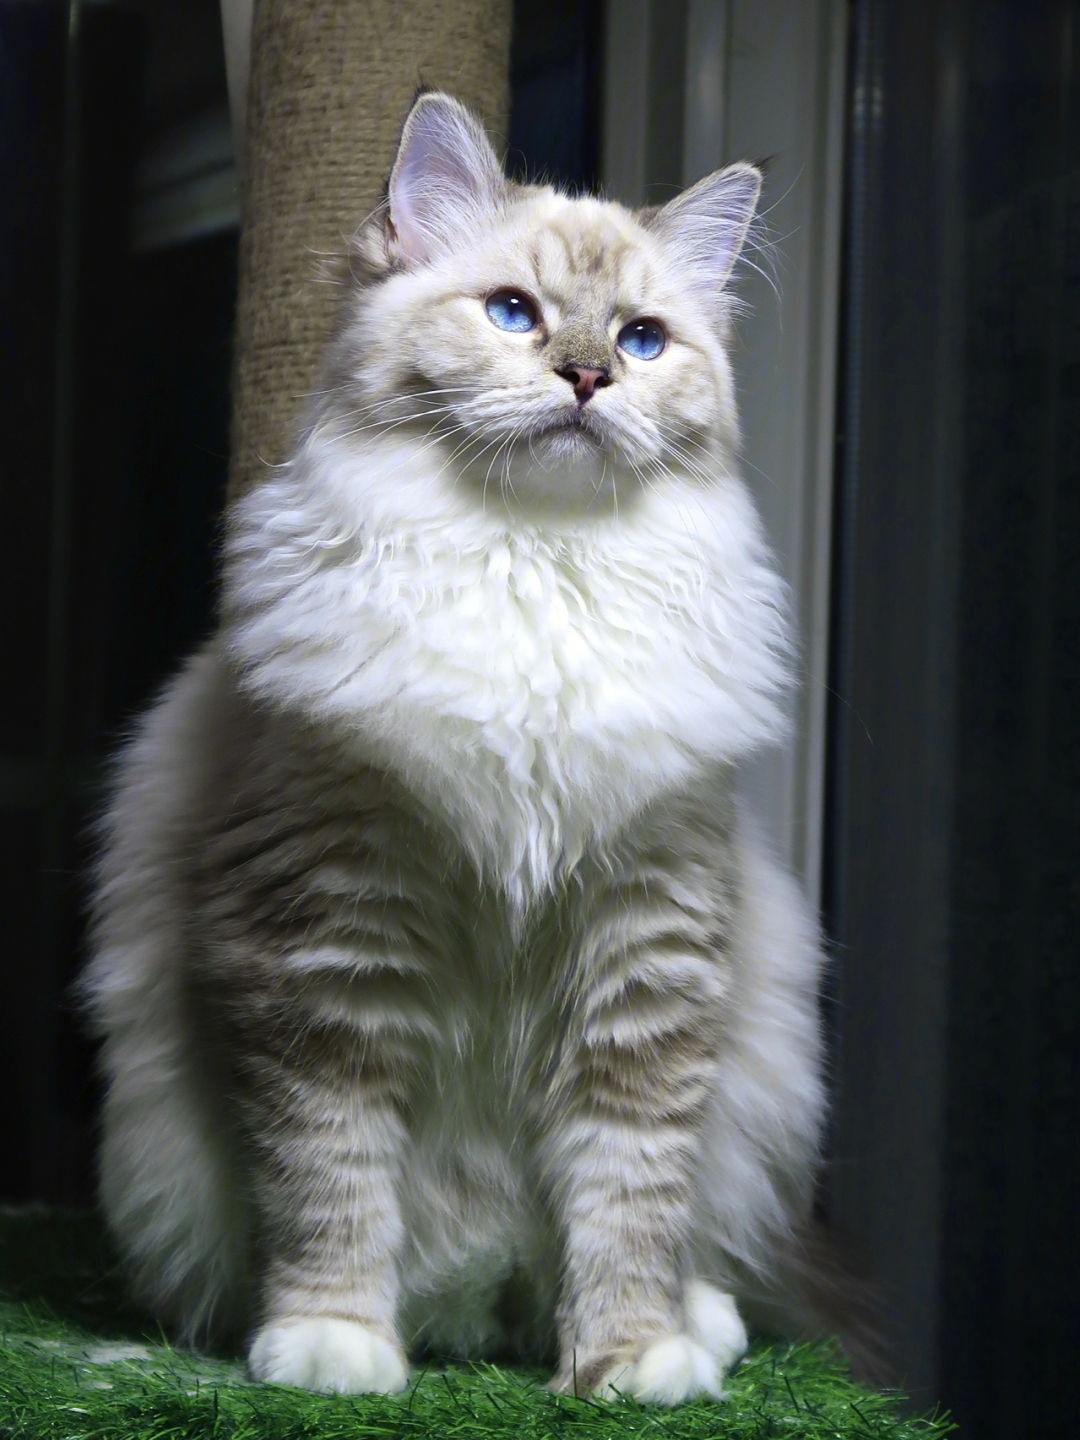 山猫布偶猫也可以这么帅嘛